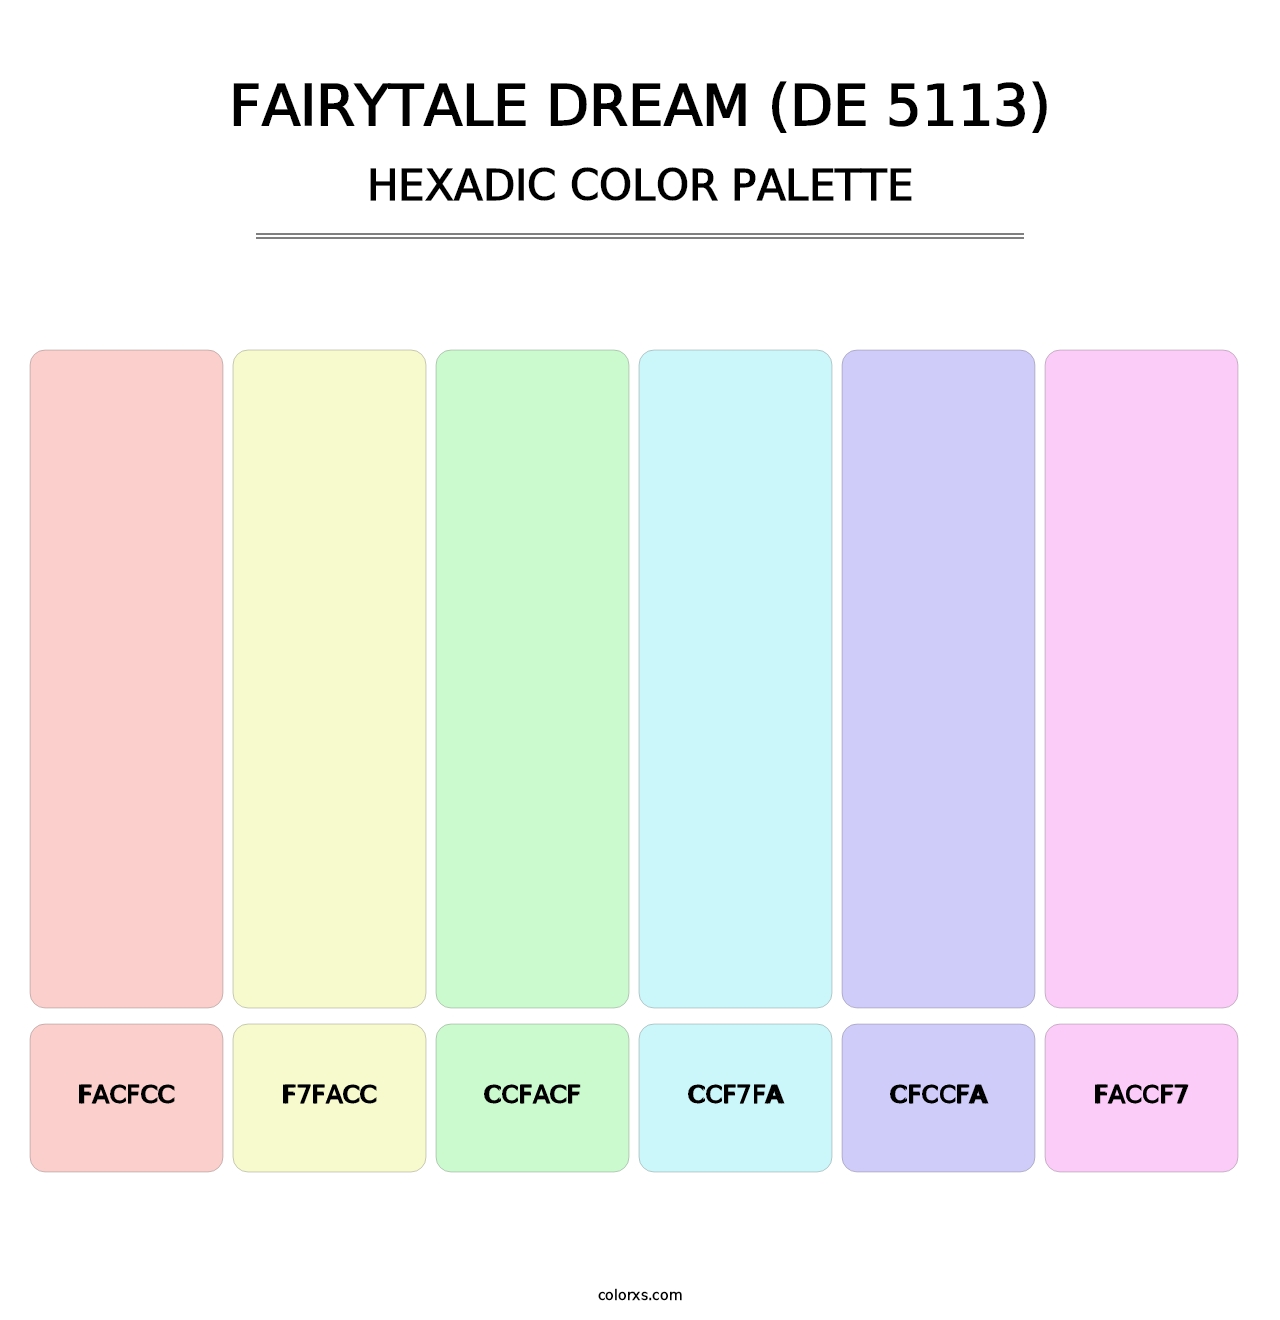 Fairytale Dream (DE 5113) - Hexadic Color Palette